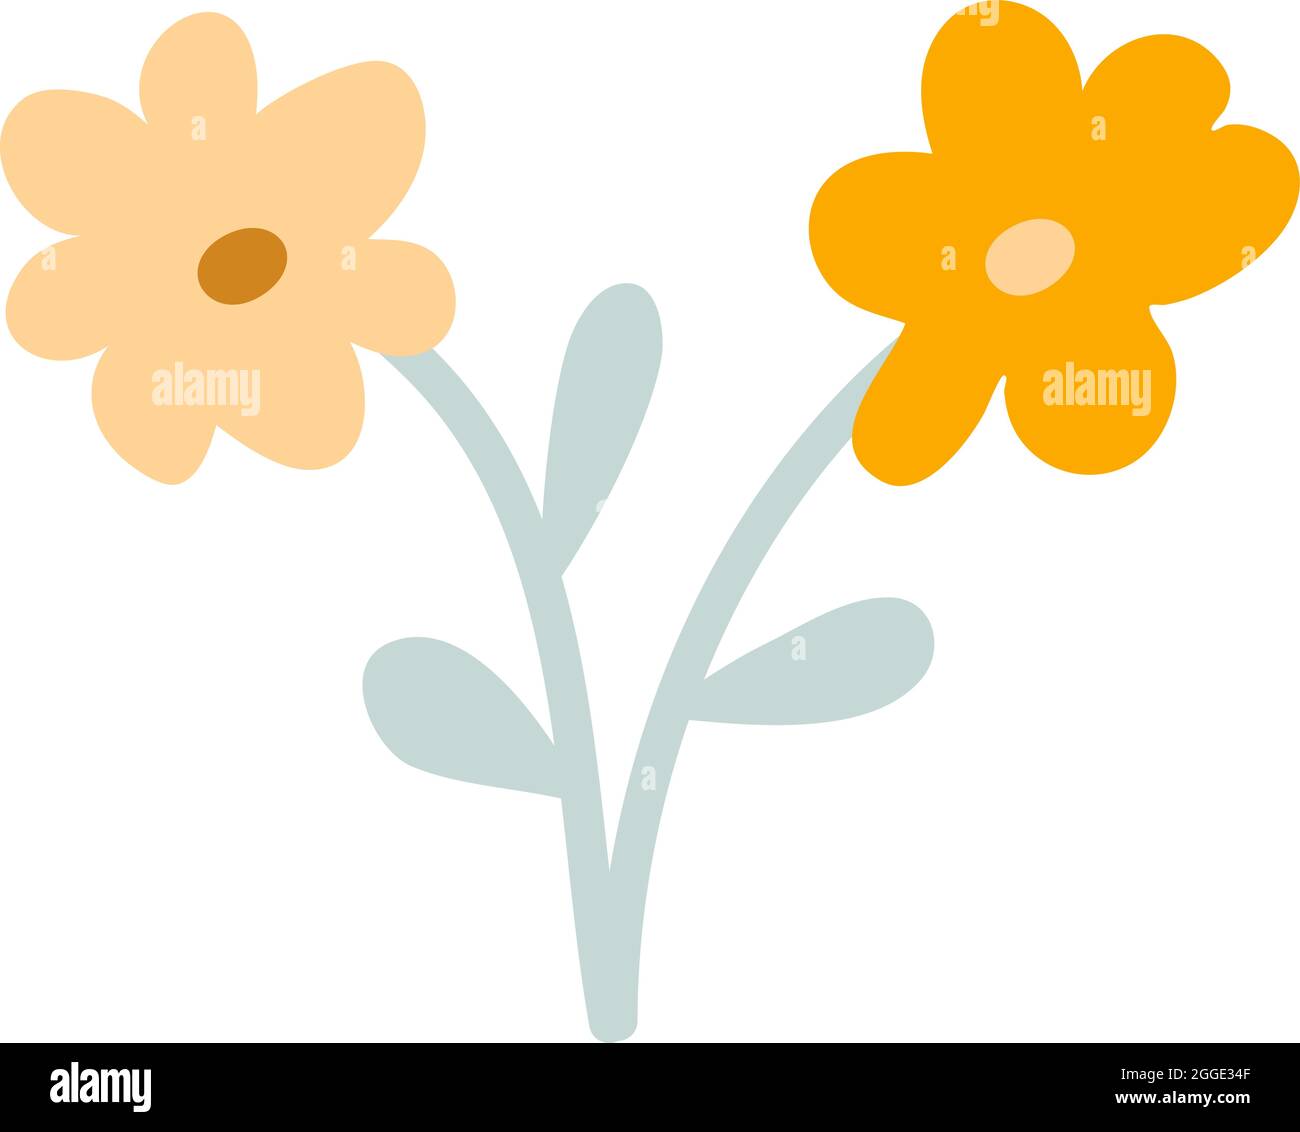 Disegno a mano stilizzato due fiori vettoriali. Elemento d'arte dell'illustrazione della primavera scandinava. Immagine decorativa floreale estiva per il saluto carta San Valentino o. Illustrazione Vettoriale